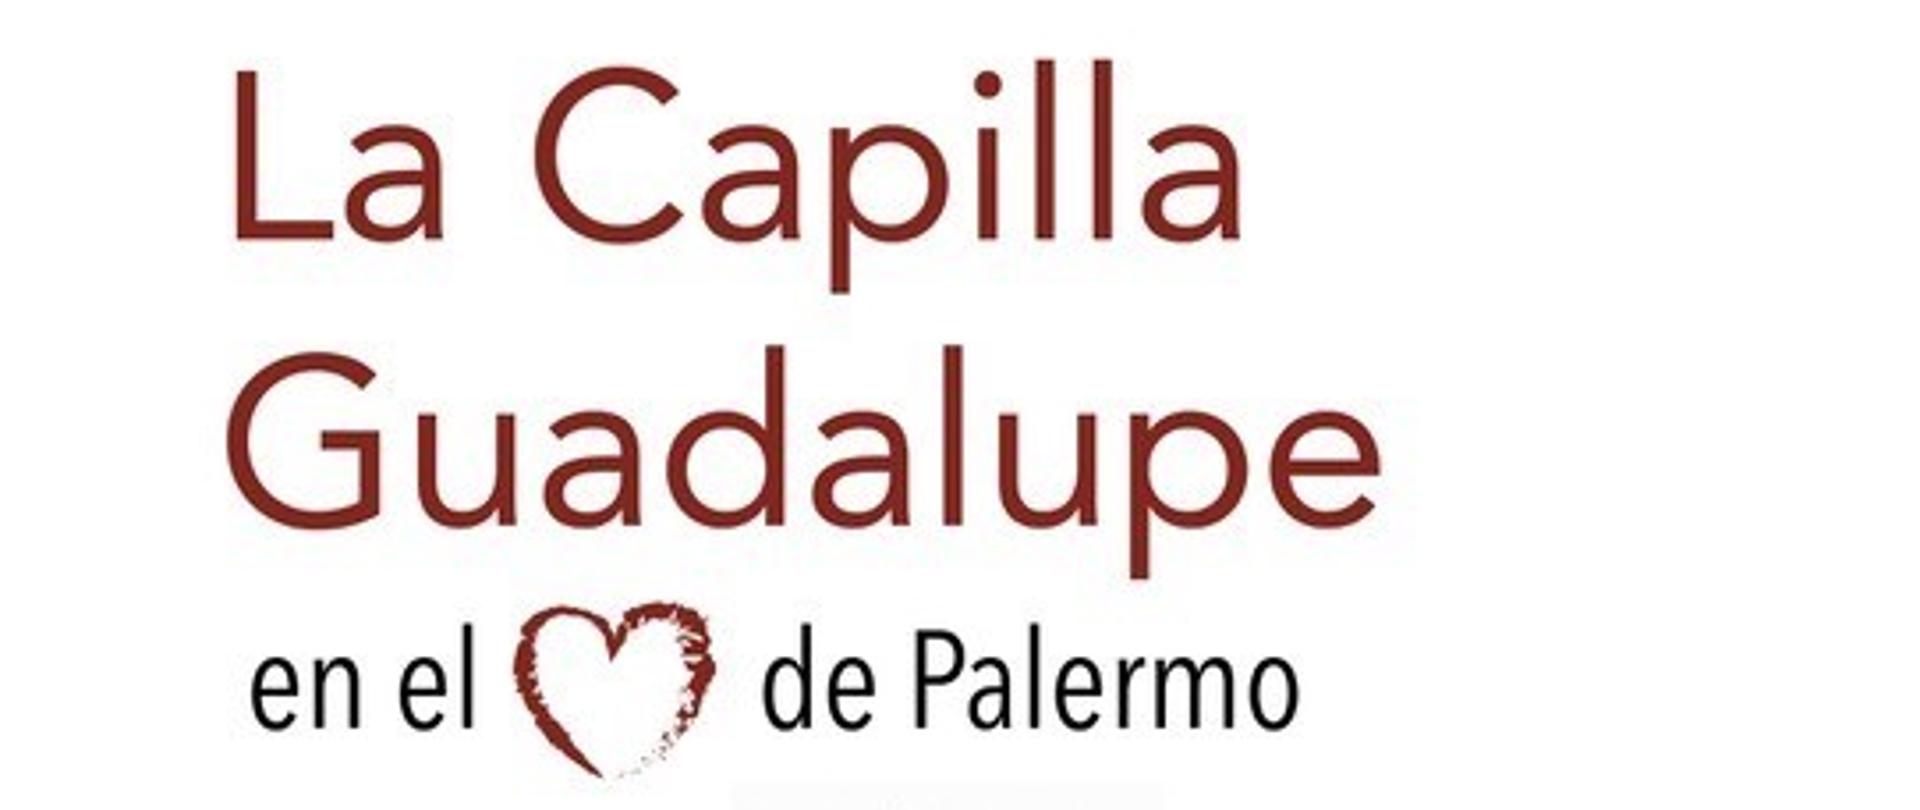 "La Capilla Guadalupe en el corazón de Palermo"